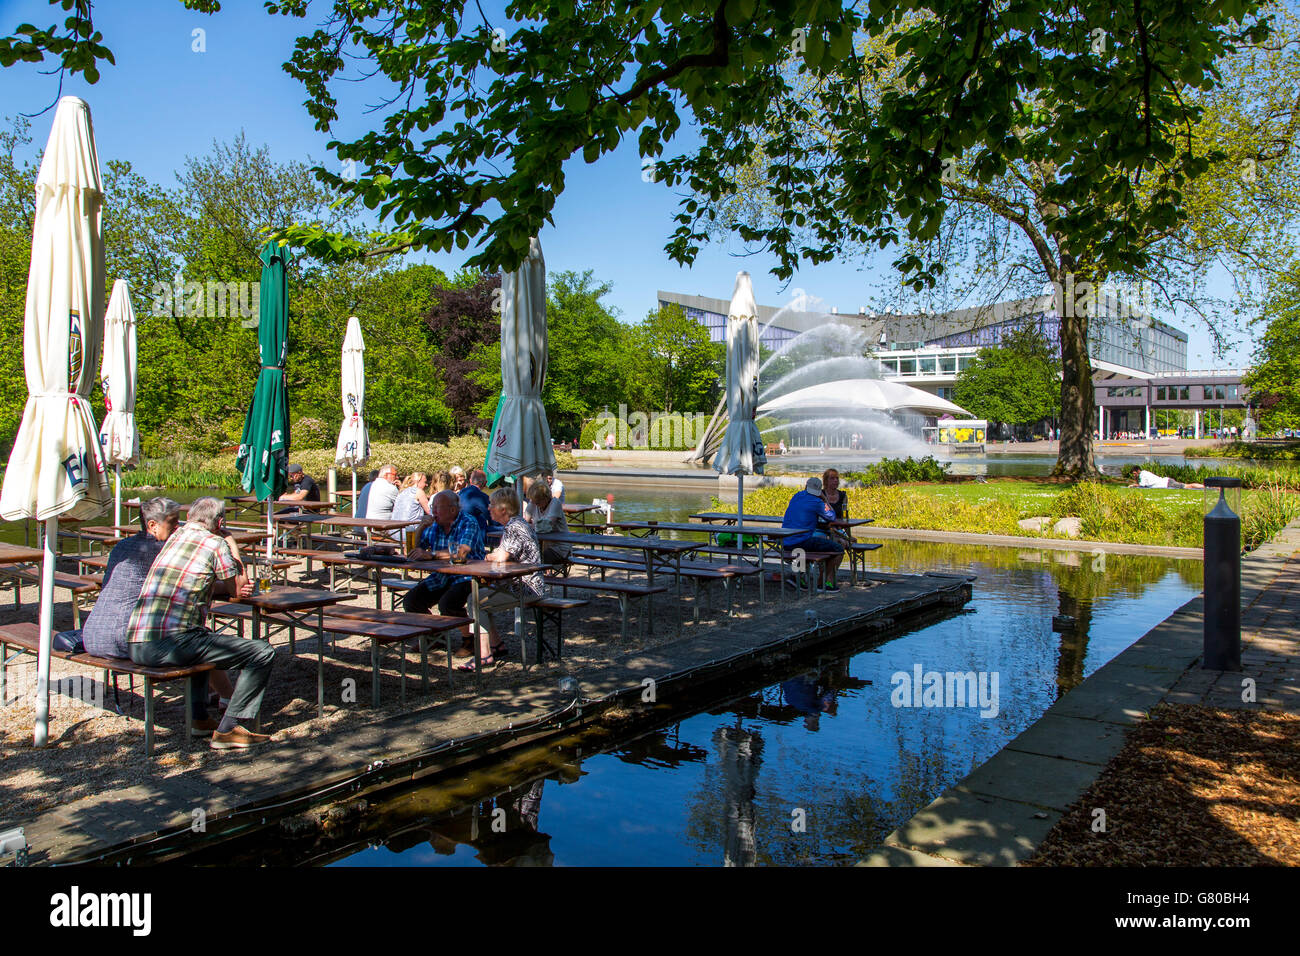 El Grugapark en Essen, Alemania, un parque municipal en el centro de la ciudad, con muchas plantas, jardines, animales y la actividad de ocio Foto de stock